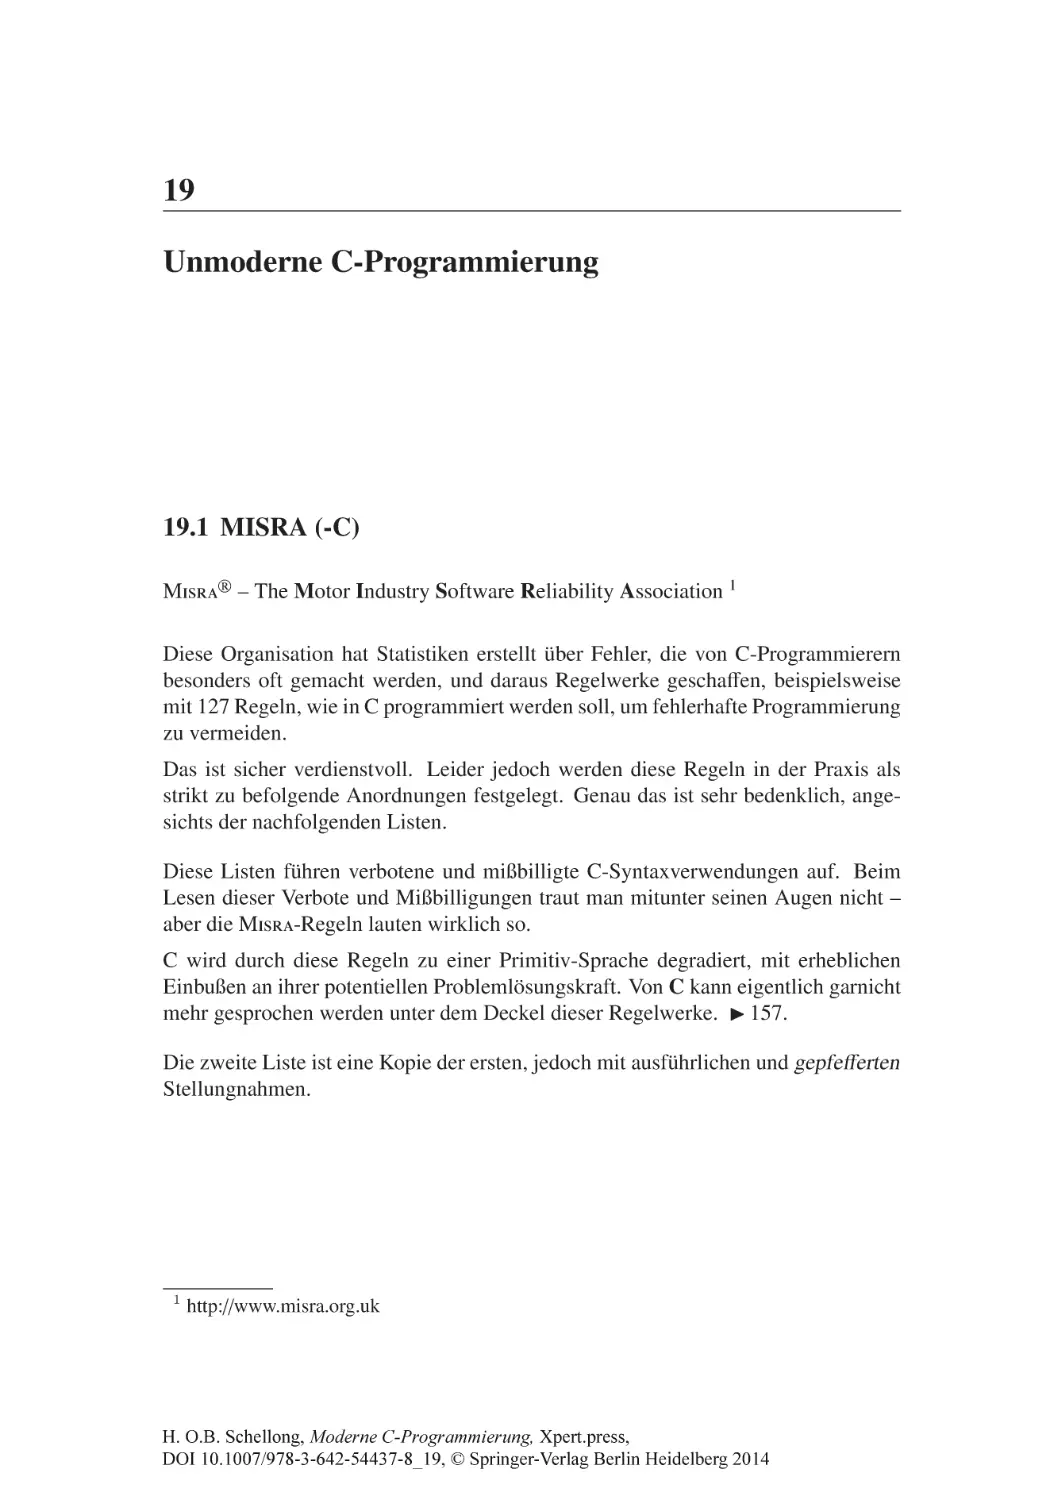 19 Unmoderne C-Programmierung
19.1 MISRA (-C)